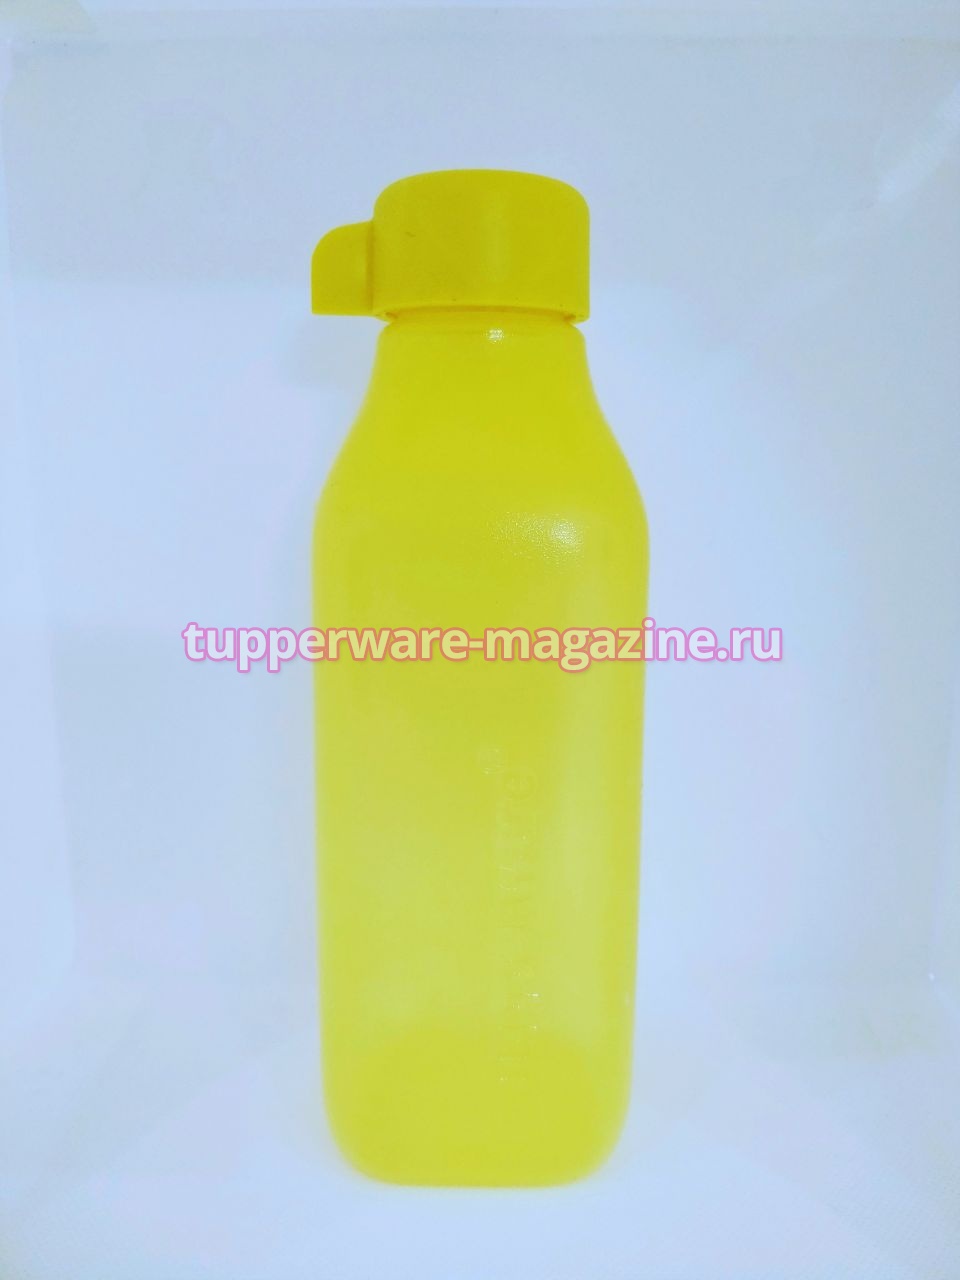 Эко-бутылка (500 мл) в желтом цвете без клапана